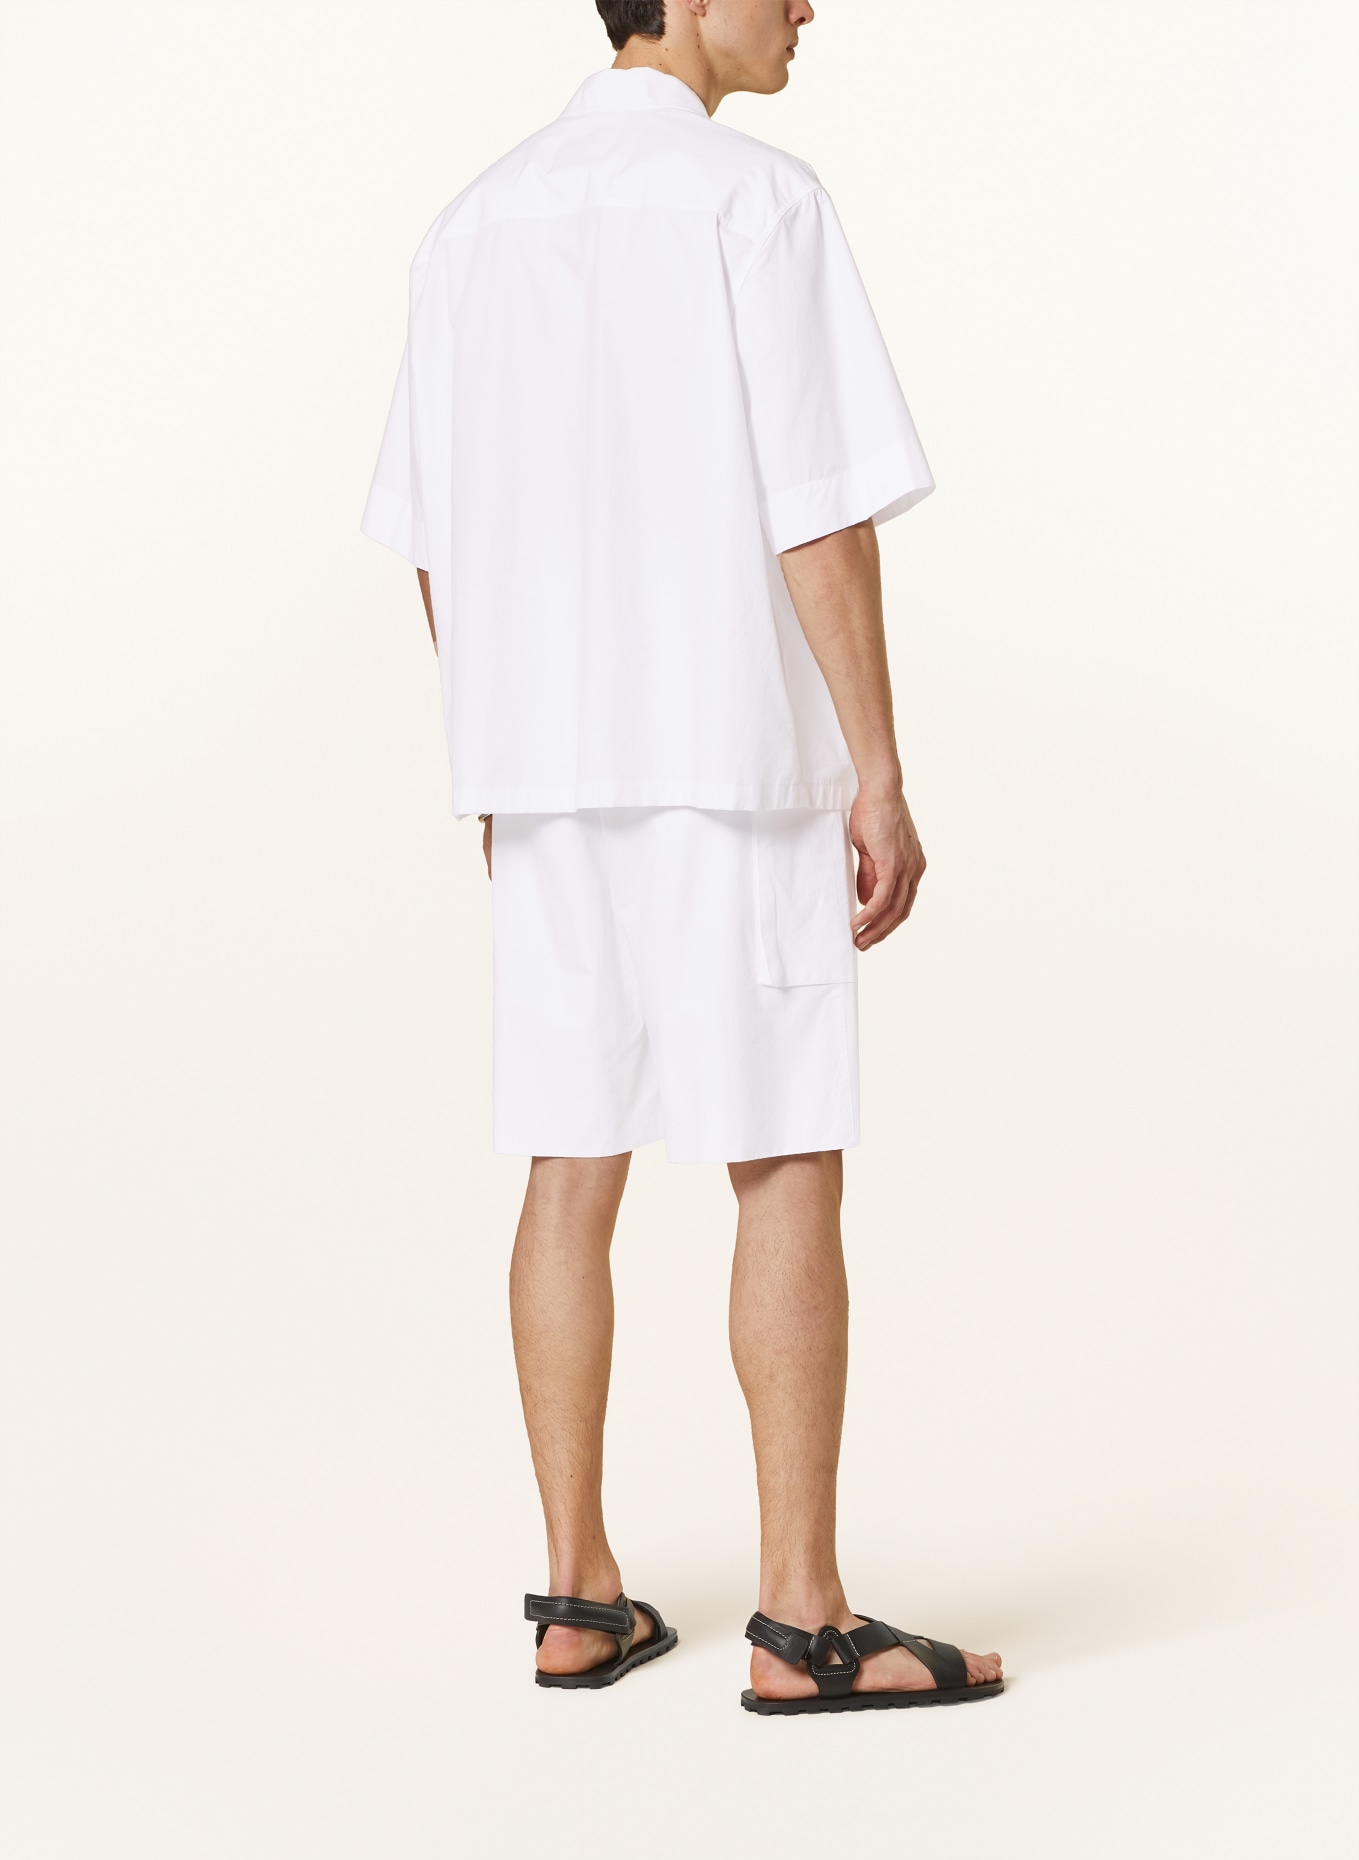 JIL SANDER Short sleeve shirt comfort fit, Color: WHITE (Image 3)